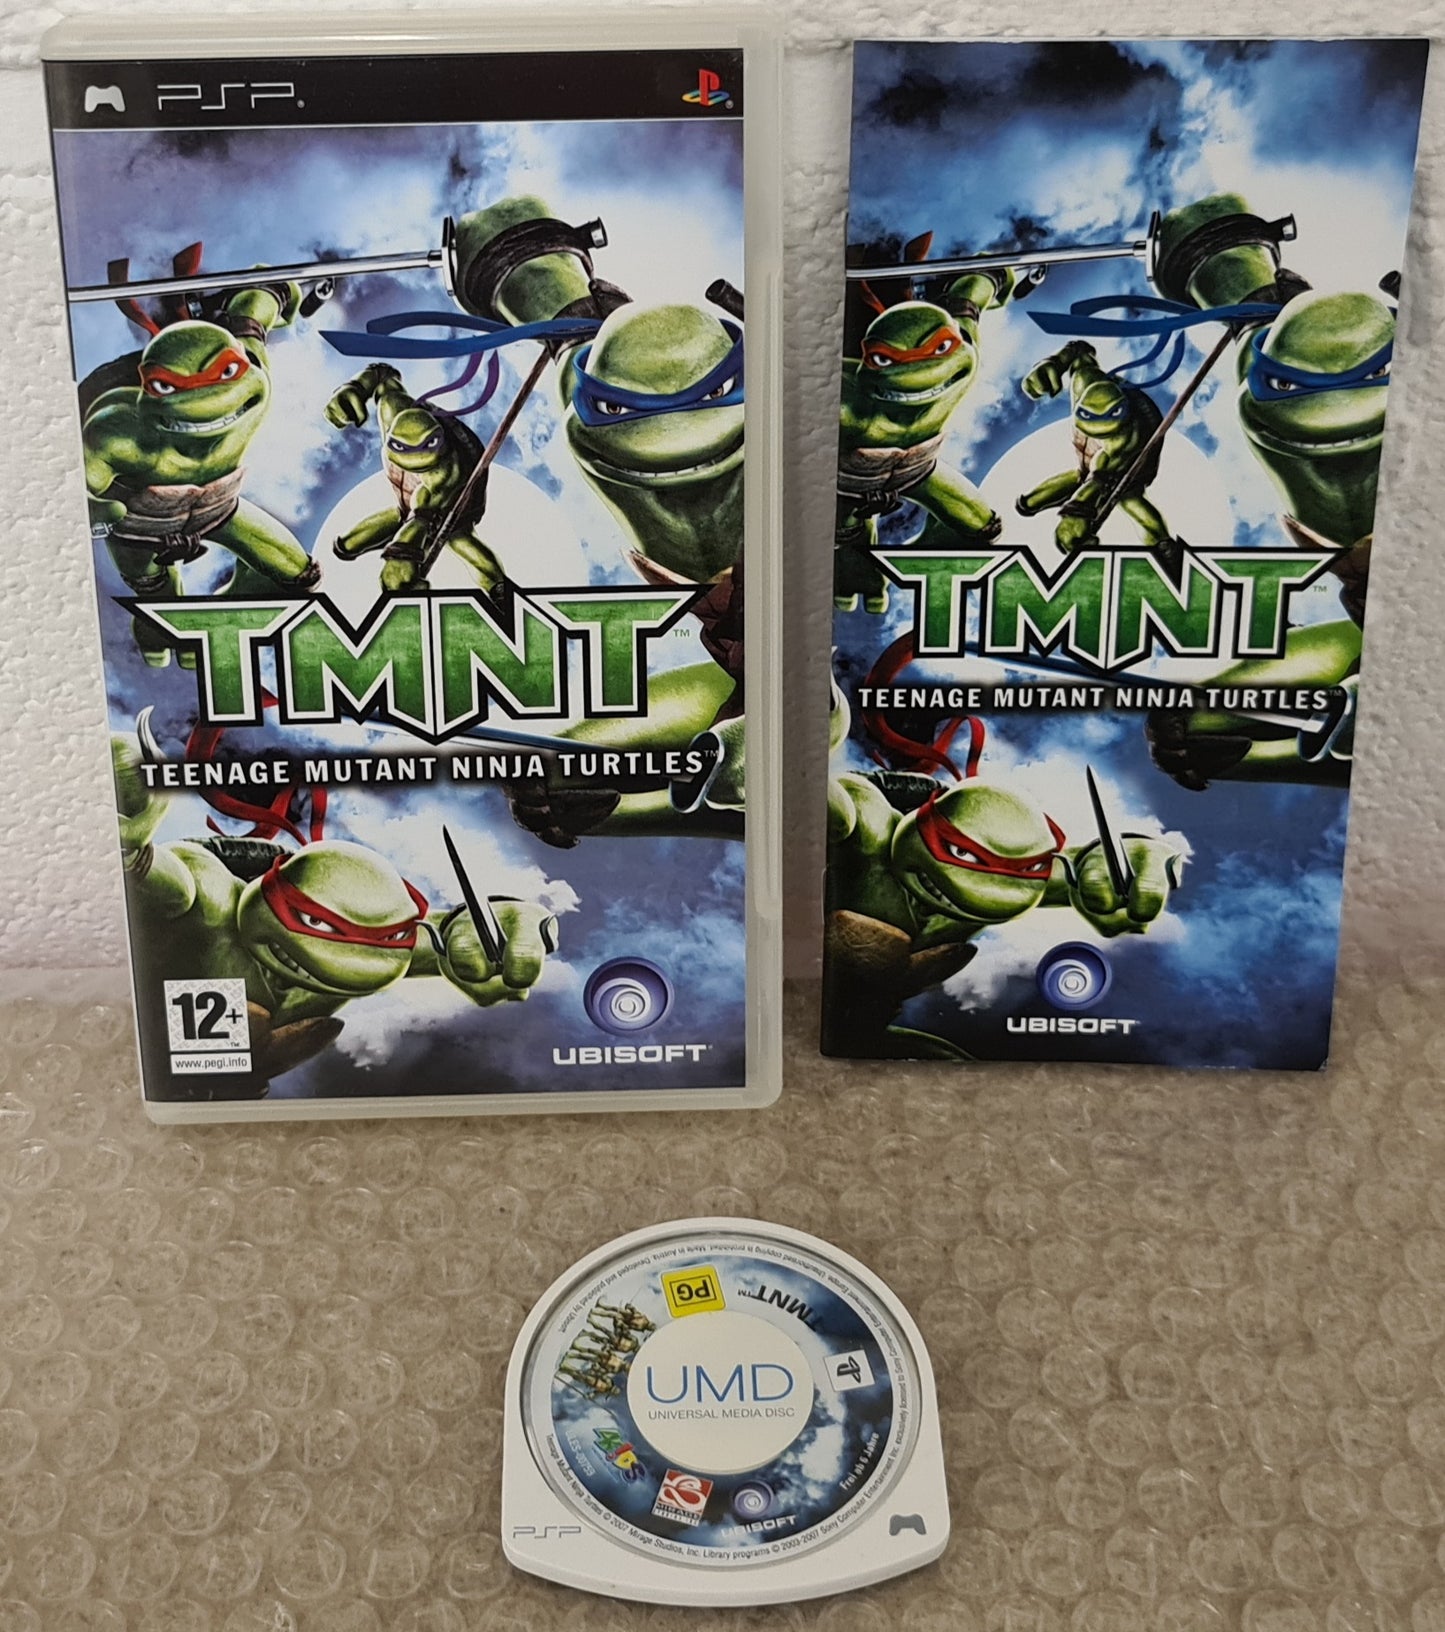 TMNT Teenage Mutant Ninja Turtles Sony PSP Game